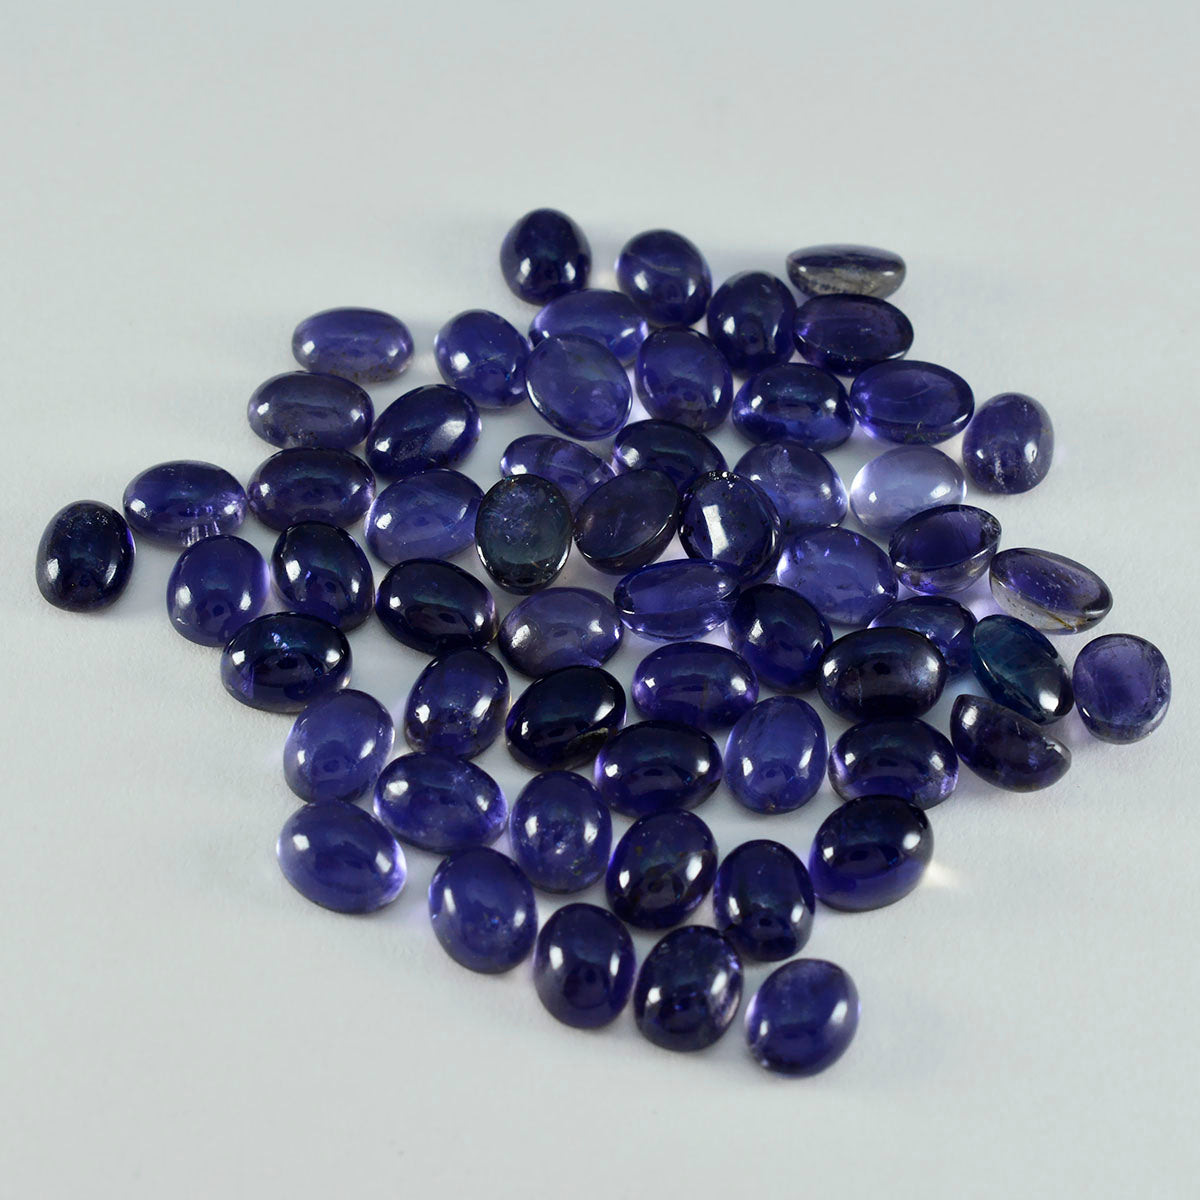 Riyogems 1PC blauwe ioliet cabochon 4x6 mm ovale vorm, mooie kwaliteitsedelsteen